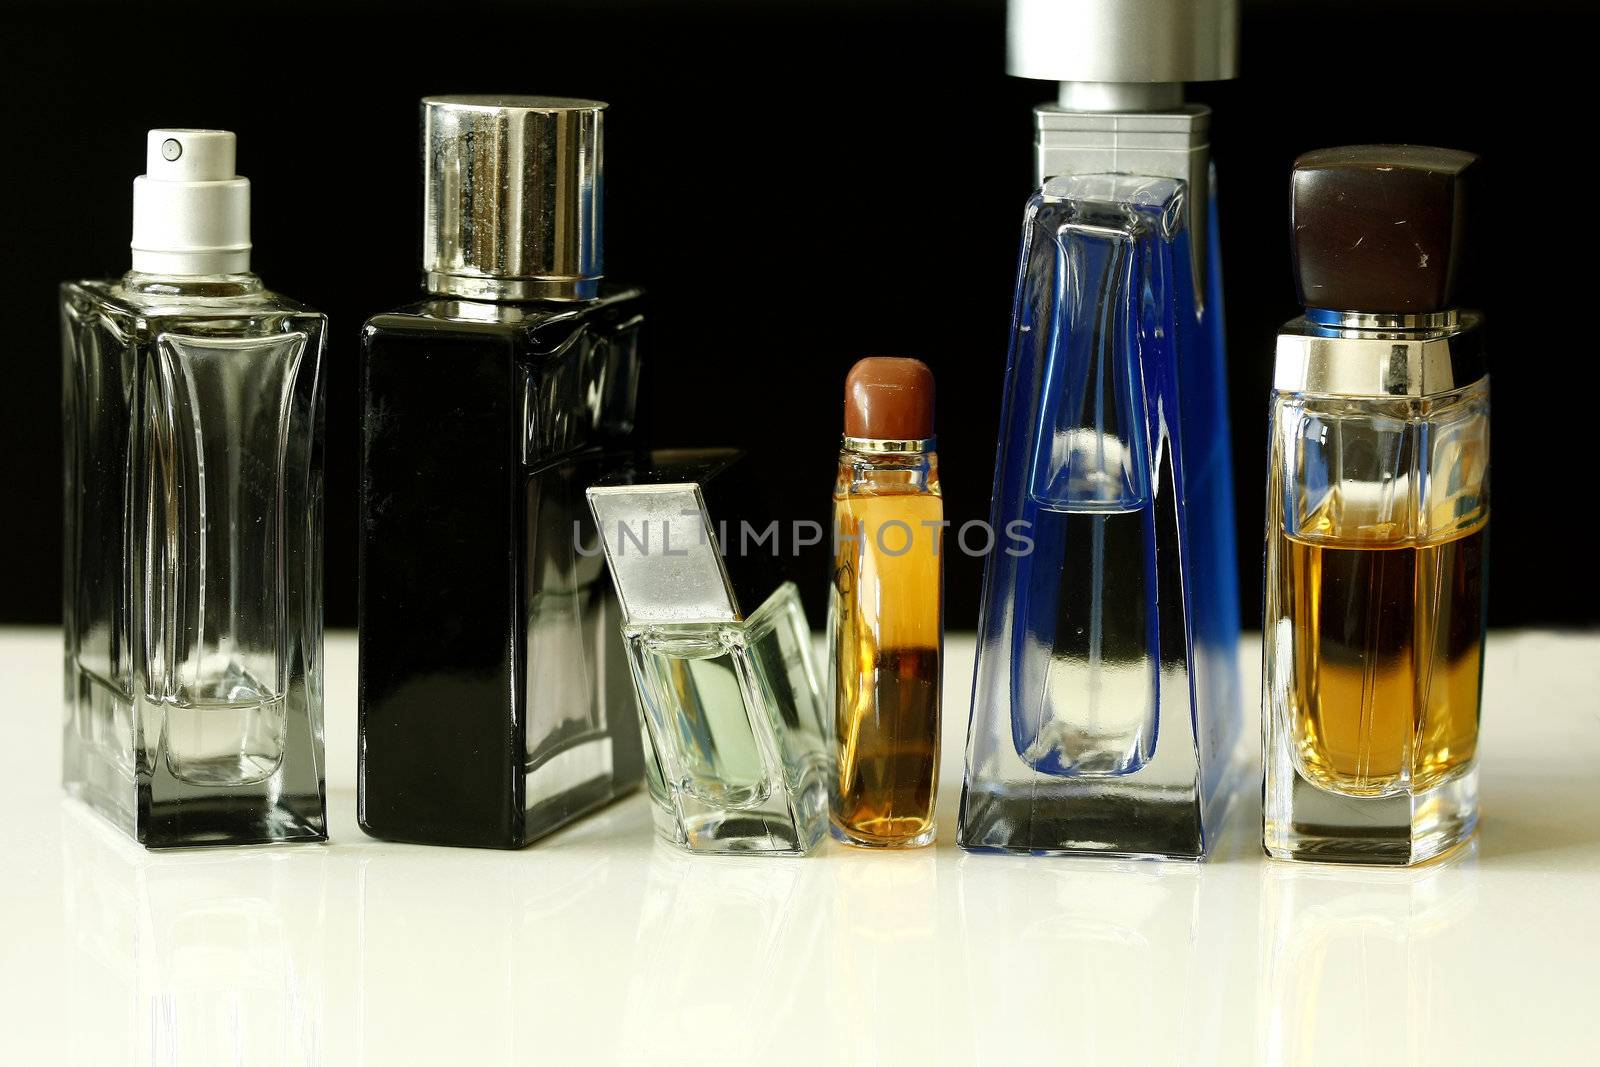 Perfume and Fragrances by sacatani